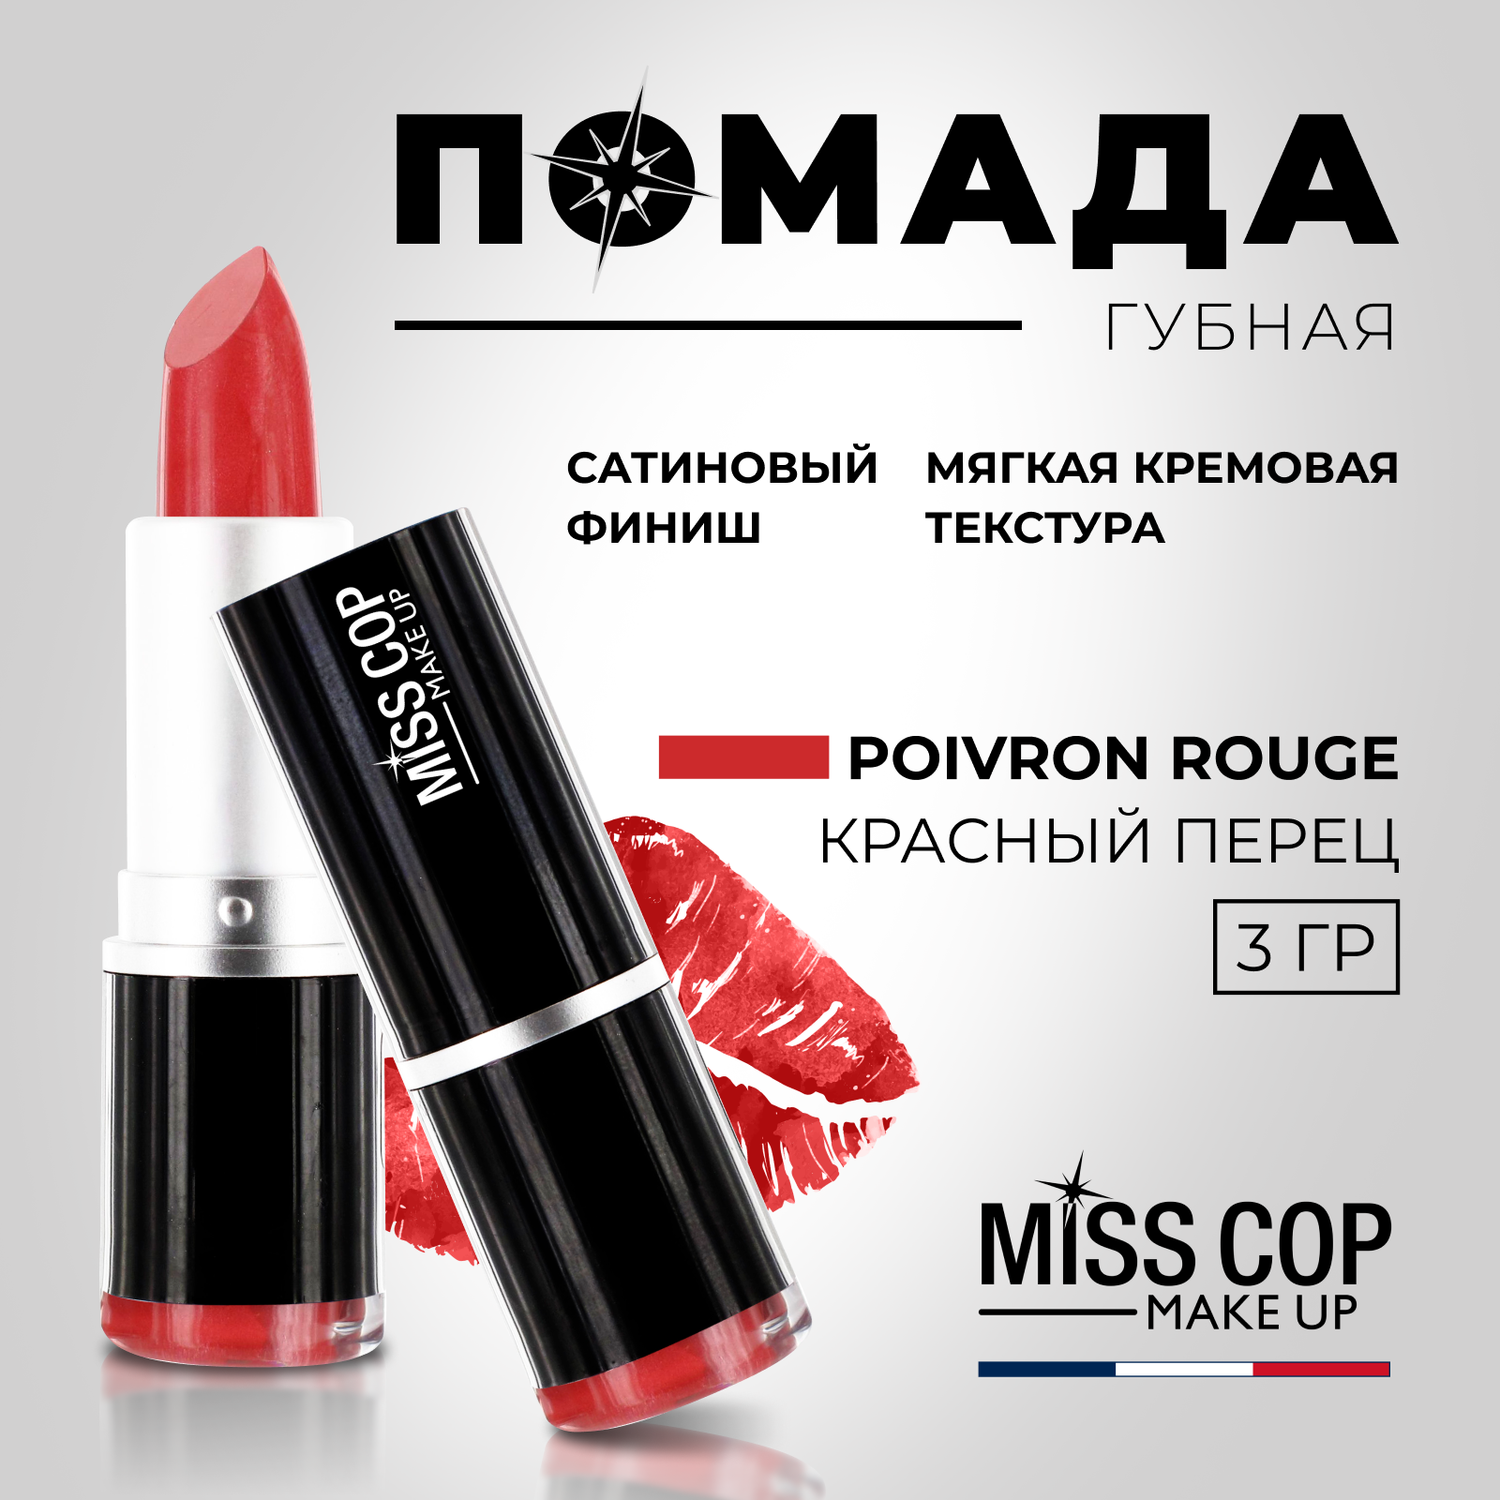 Помада губная стойкая Miss Cop матовая красная увлажняющая Франция цвет 20 Poivron rouge перец 3 г - фото 2